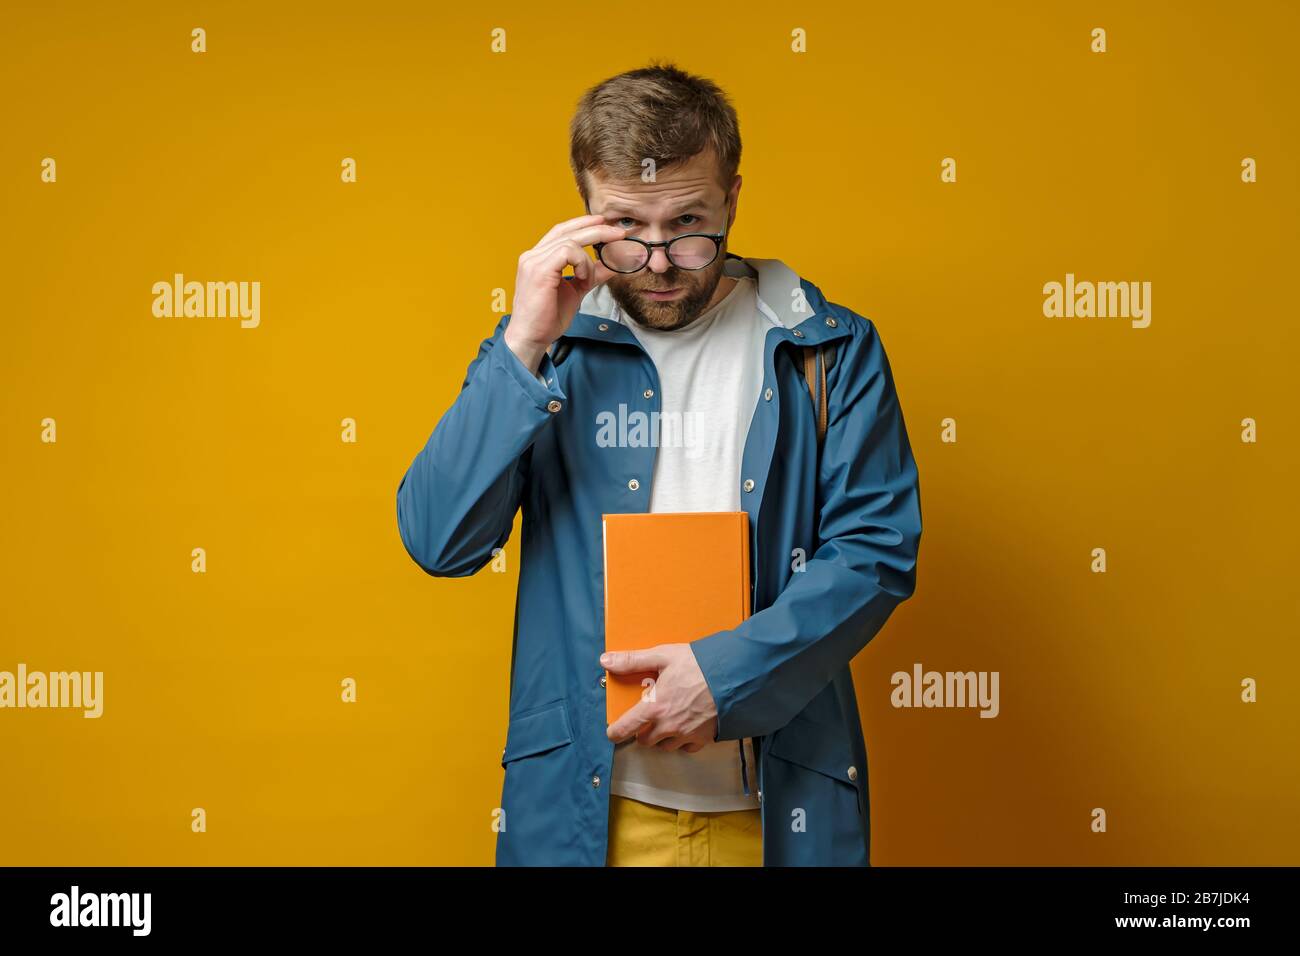 Student oder junger Wissenschaftler in einem Regenmantel und mit einem Buch, hält Brille in der Hand und sieht selbstbewusst aus, auf gelbem Hintergrund. Stockfoto